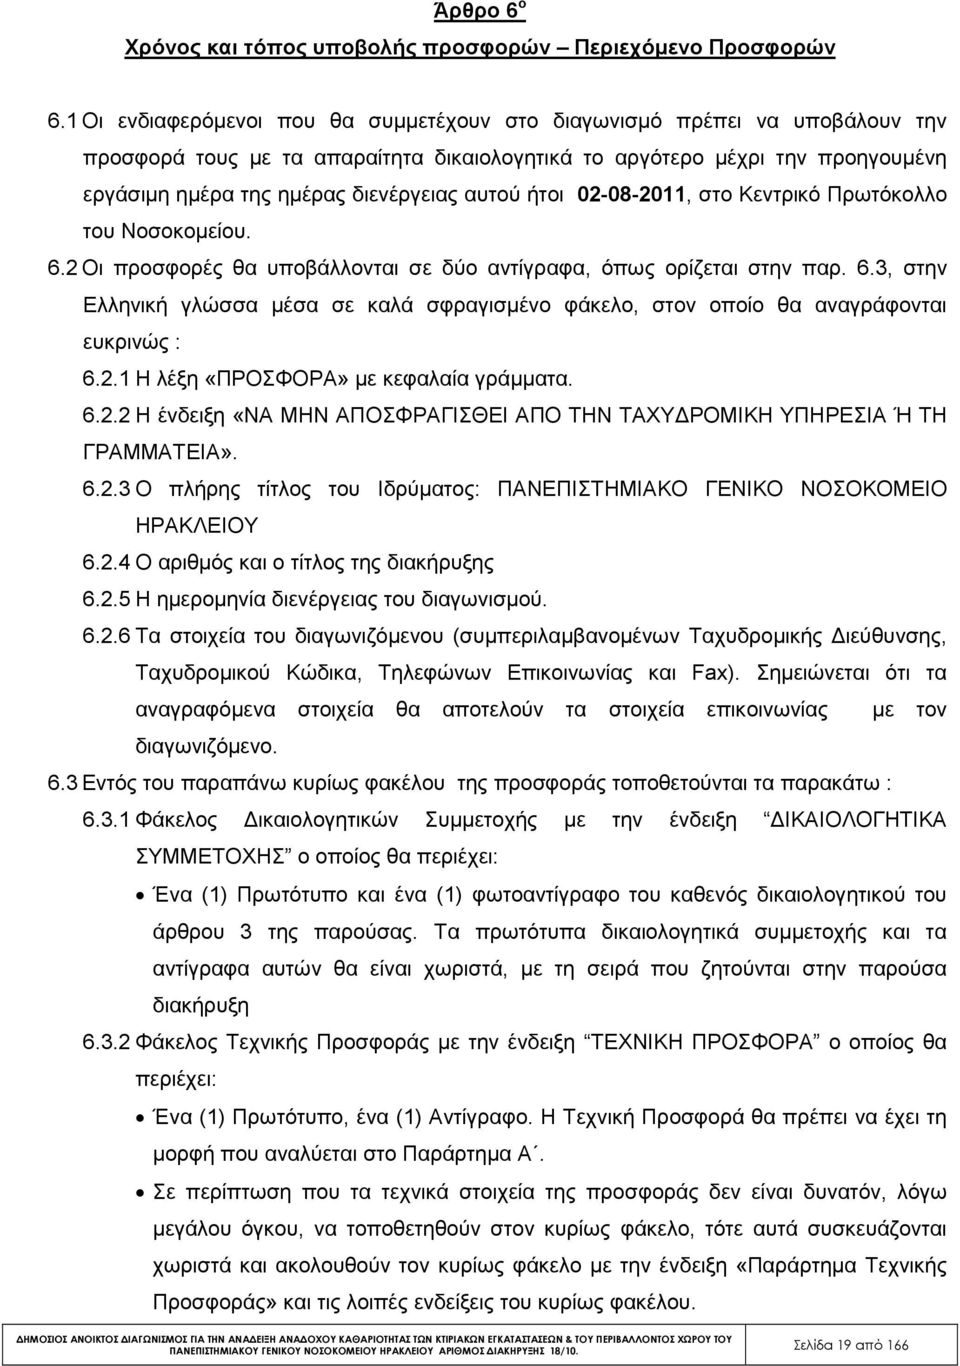 αυτού ήτοι 02-08-2011, στο Κεντρικό Πρωτόκολλο του Νοσοκοµείου. 6.2 Οι προσφορές θα υποβάλλονται σε δύο αντίγραφα, όπως ορίζεται στην παρ. 6.3, στην Ελληνική γλώσσα µέσα σε καλά σφραγισµένο φάκελο, στον οποίο θα αναγράφονται ευκρινώς : 6.